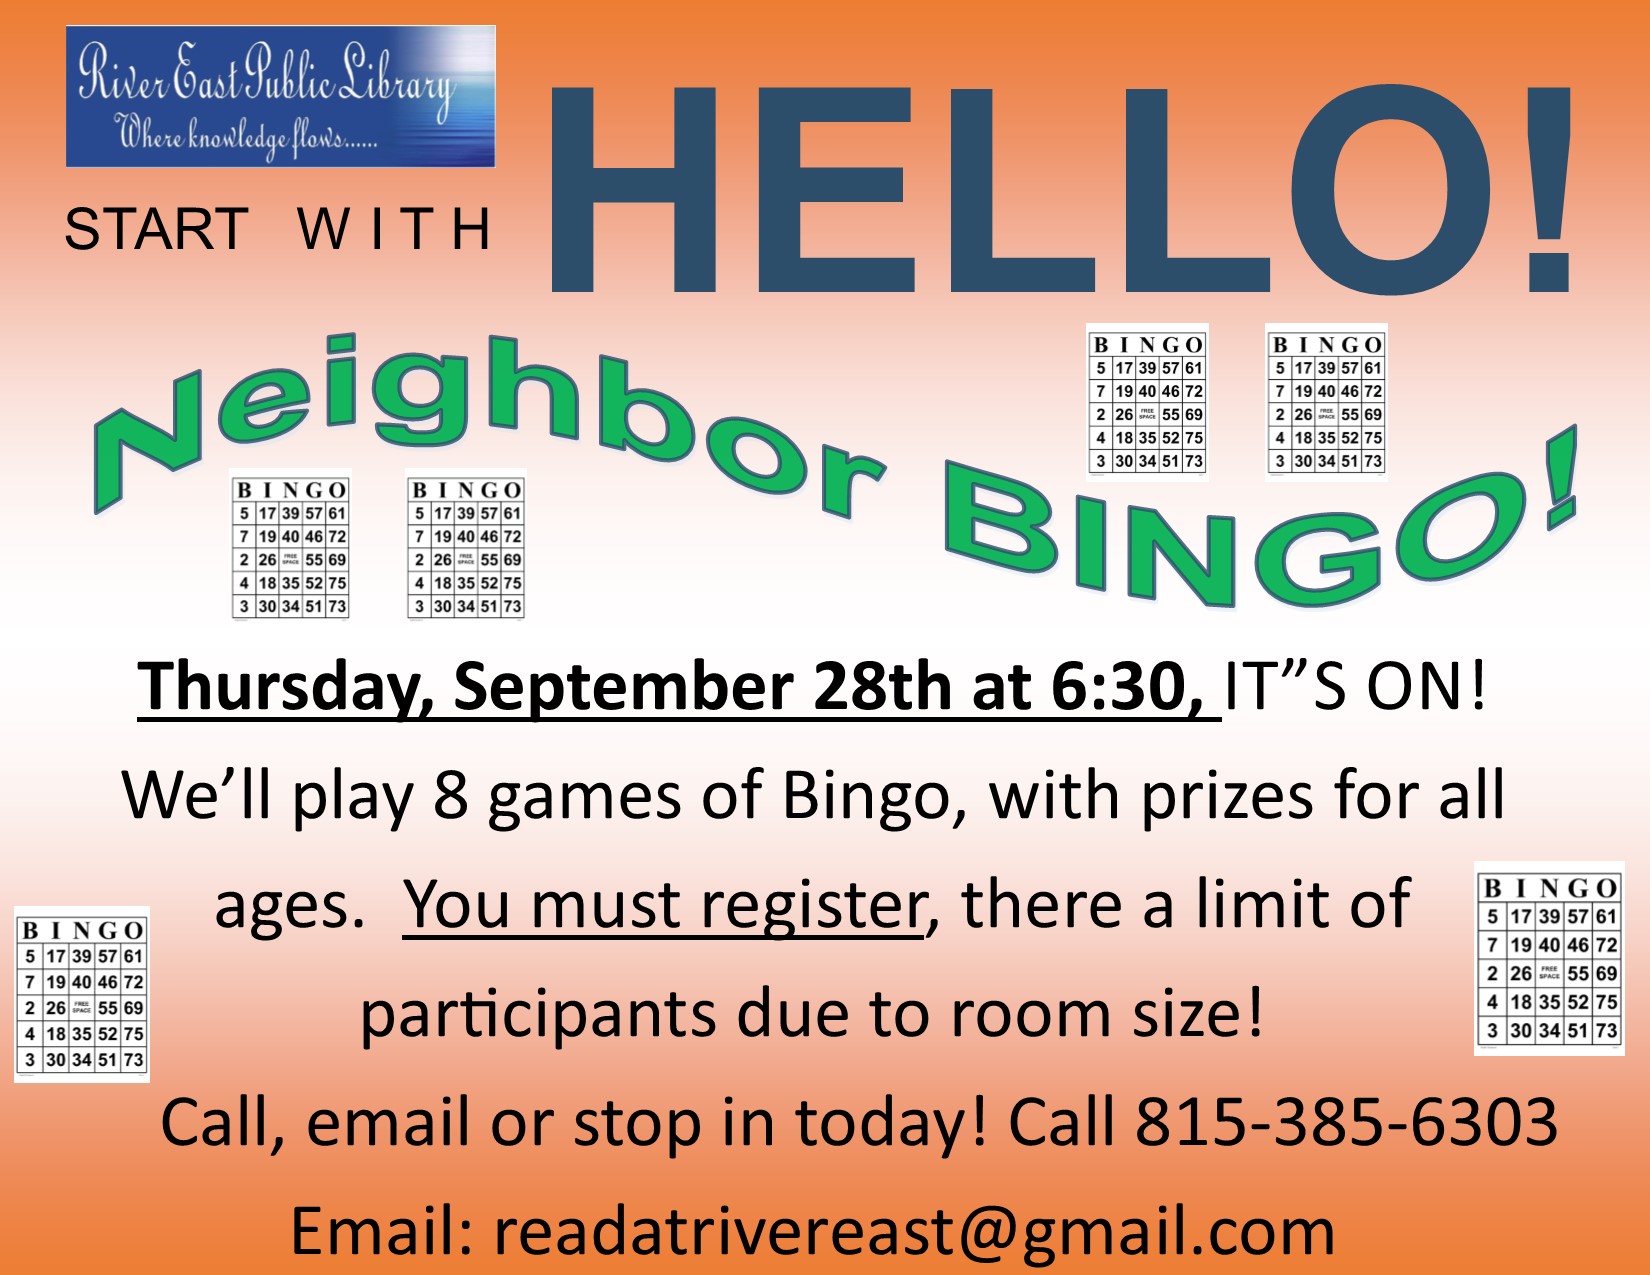 Flyer advertising our upcoming neighborhood bingo